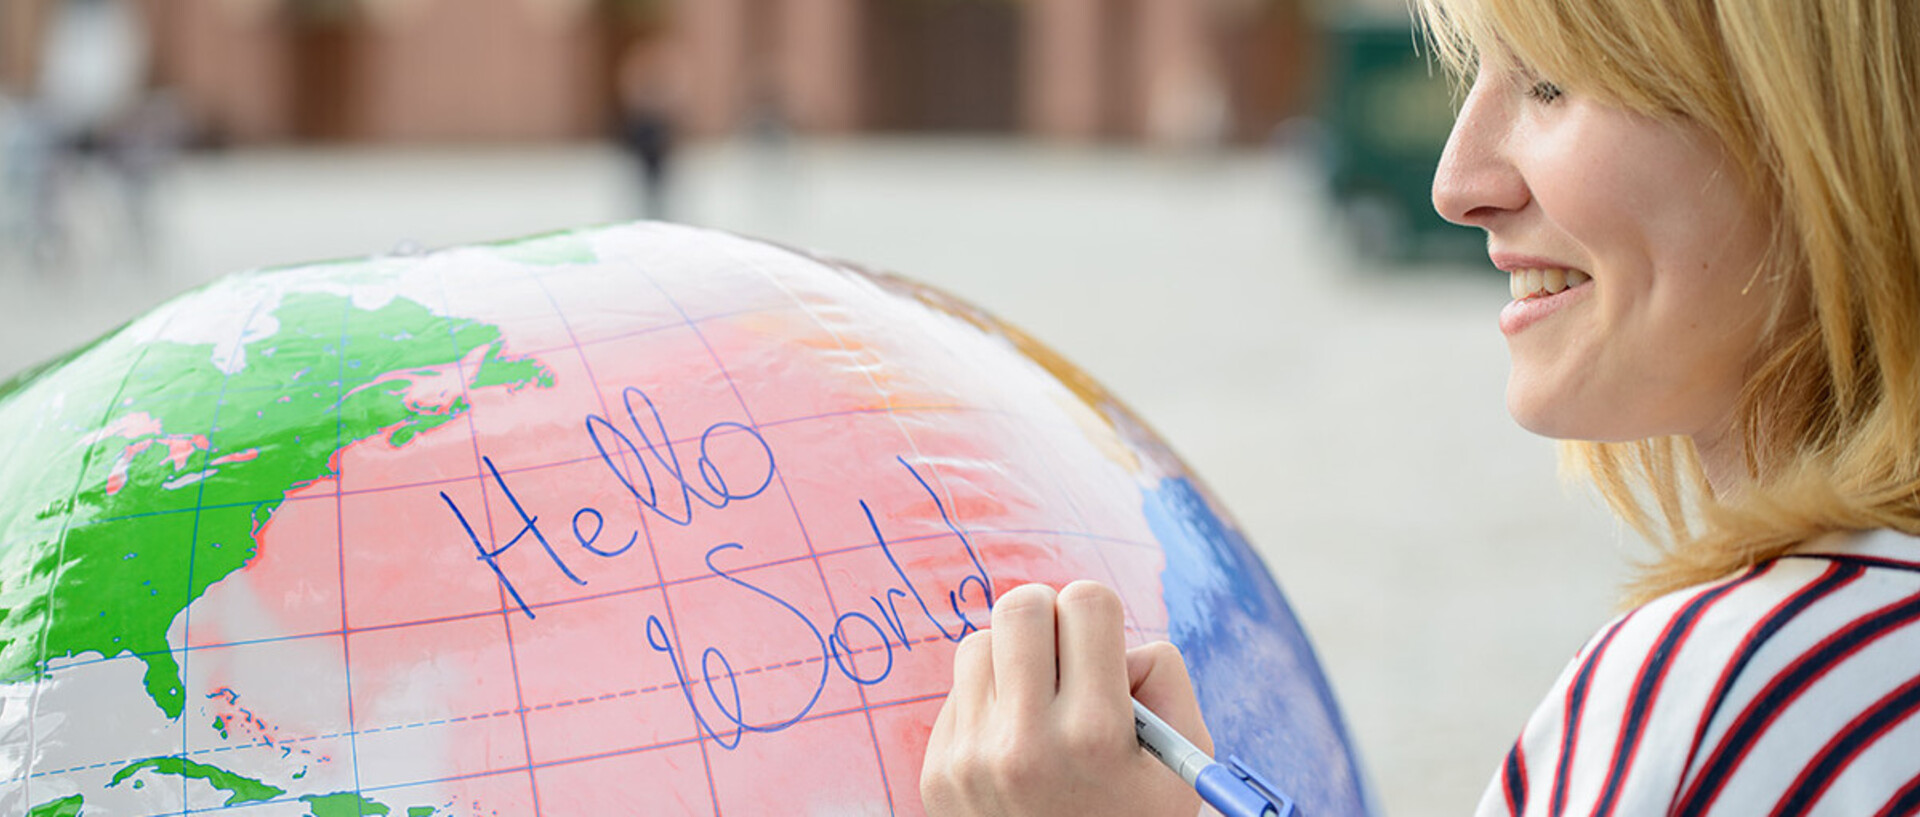 Studentin schreibt die Wrote "hello world" auf einen aufgeblasenen Globus